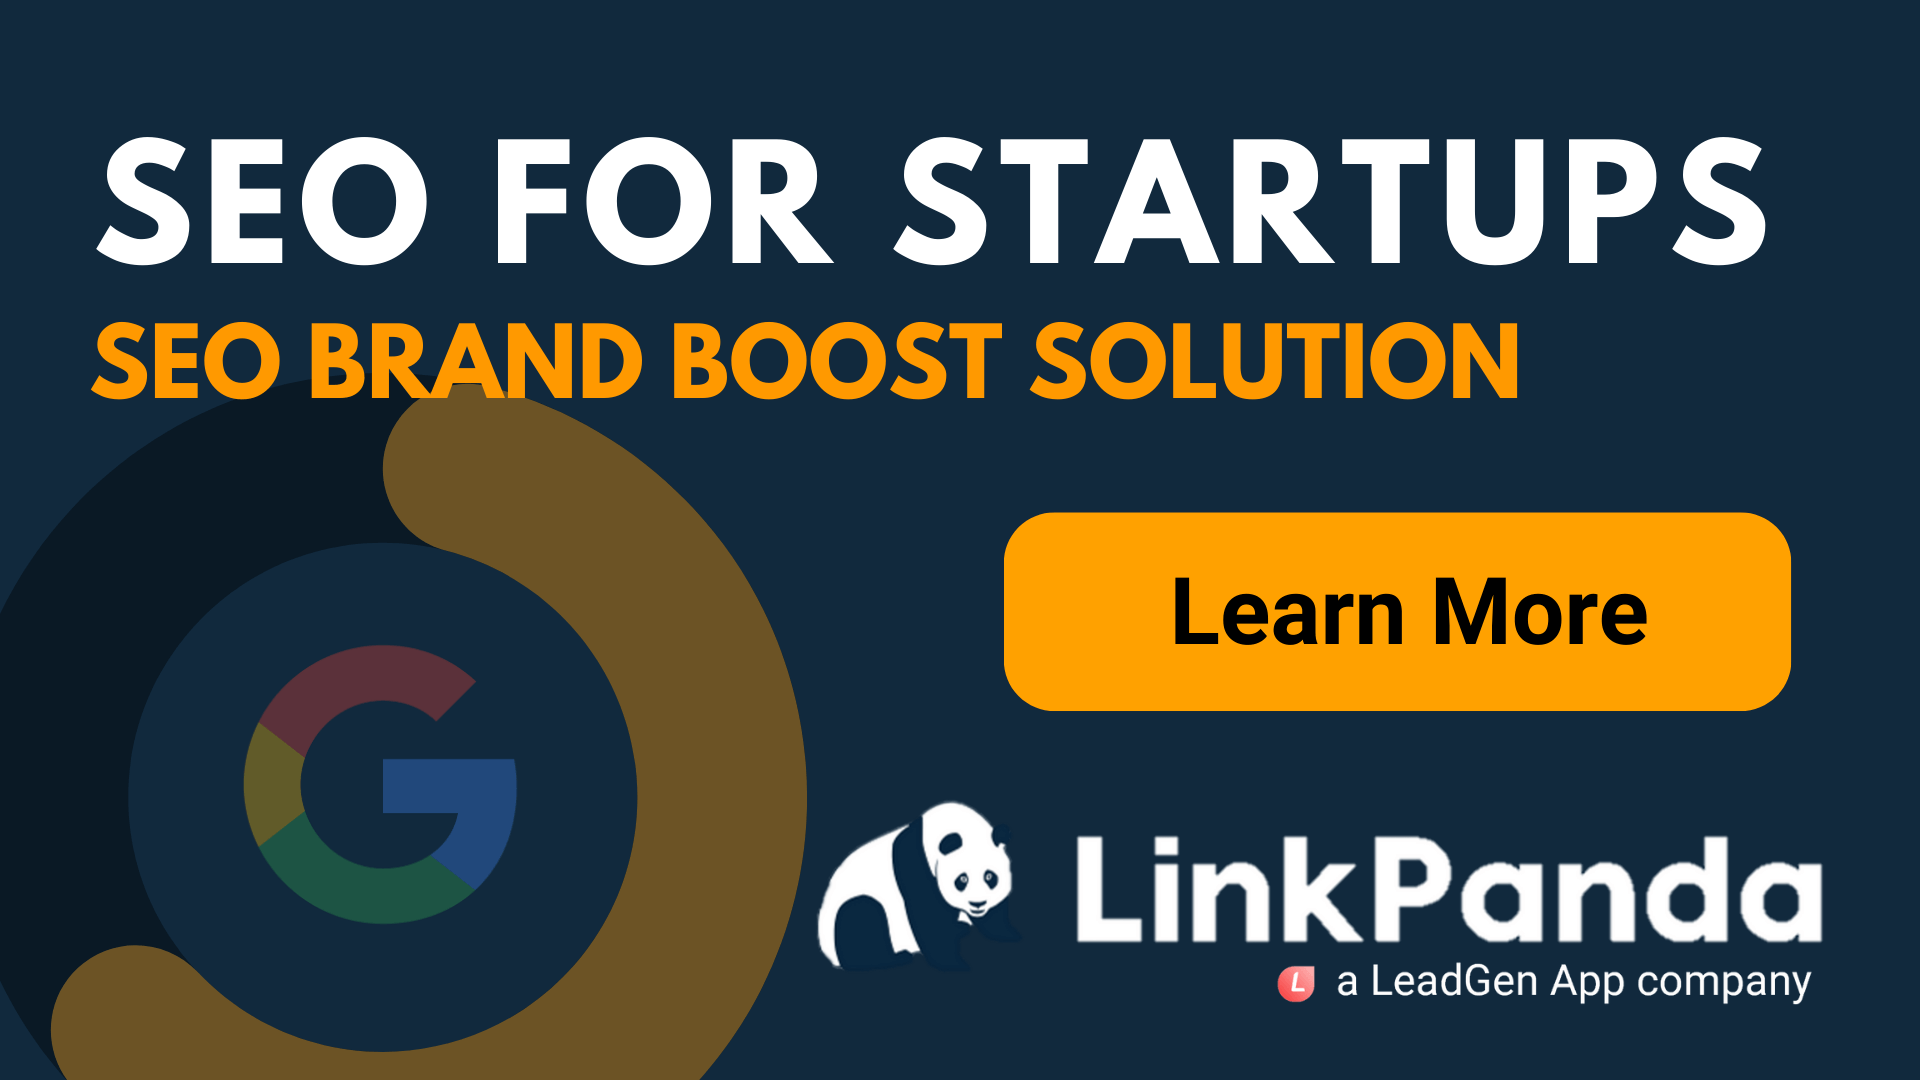 SEO for Startups - LinkPanda